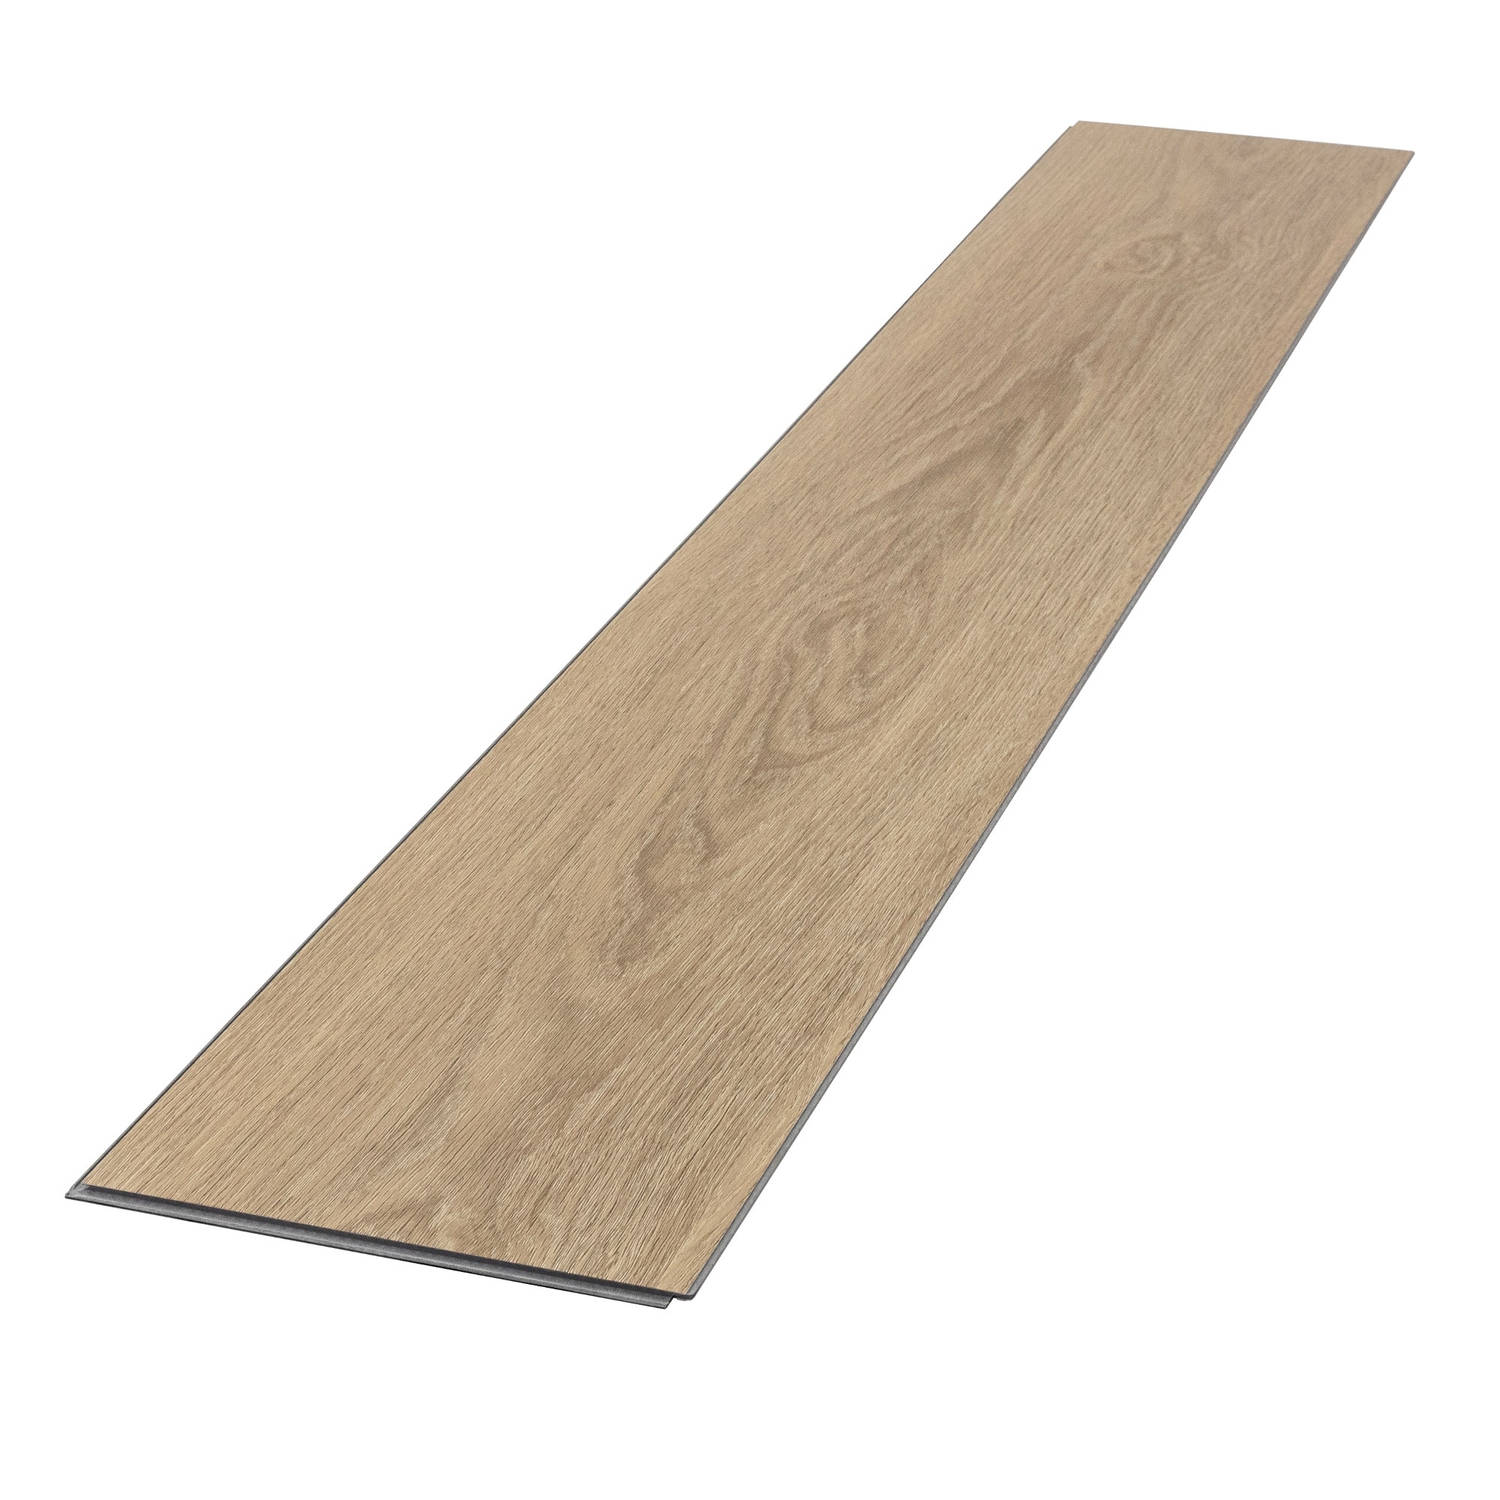 PVC vinyl vloer eik Golden Hour met kliksysteem voor 1,5 m² 122x18 cm design vloerpatroon ML-Design